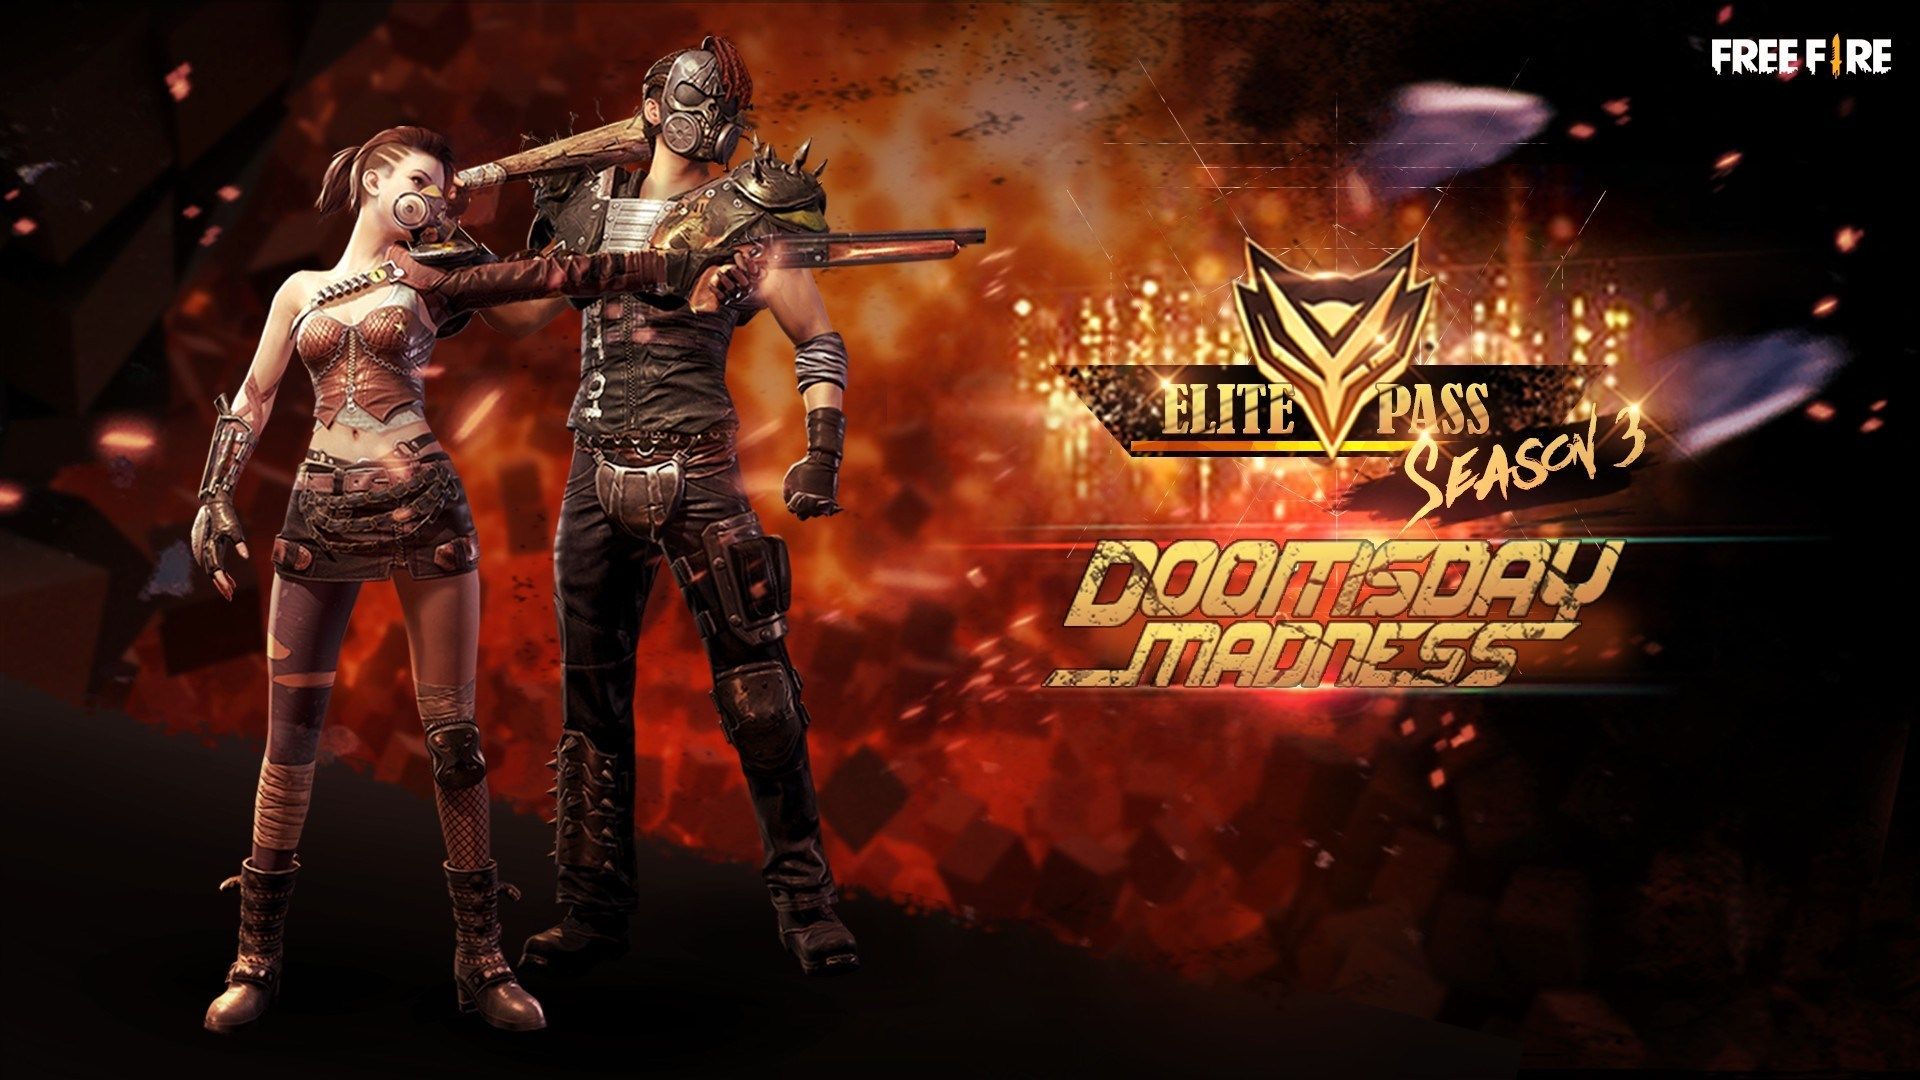 Doomsday Madness, Elite Pass Terbaru Dari Free Fire Yang Siap Menantang Survivors!